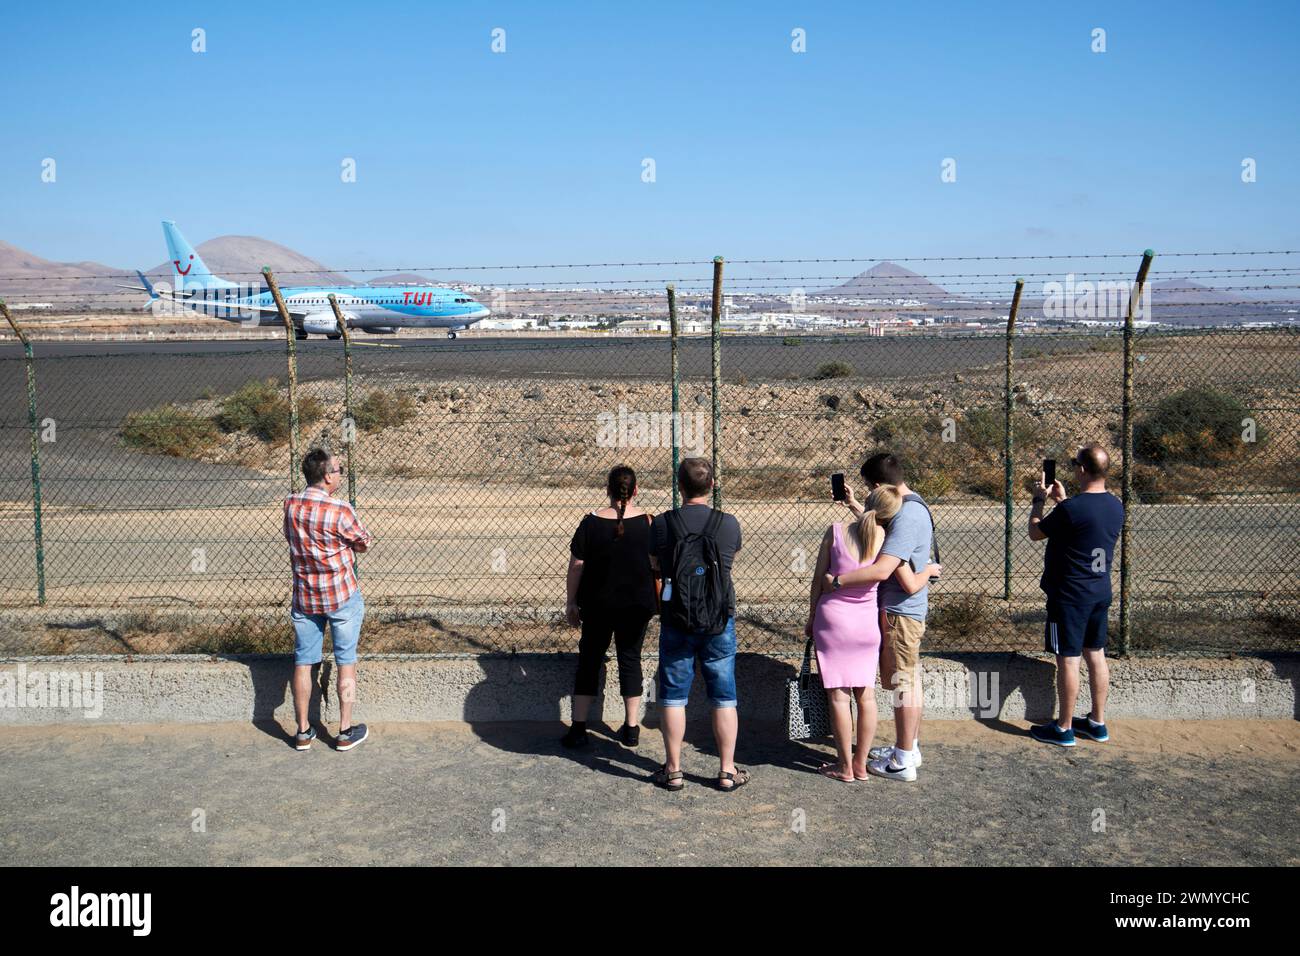 Touristen, die Flugzeuge am Ende der Start- und Landebahn beobachten tui Flugzeugabflug lanzarote Flughafen lanzarote, Kanarische Inseln, spanien Stockfoto